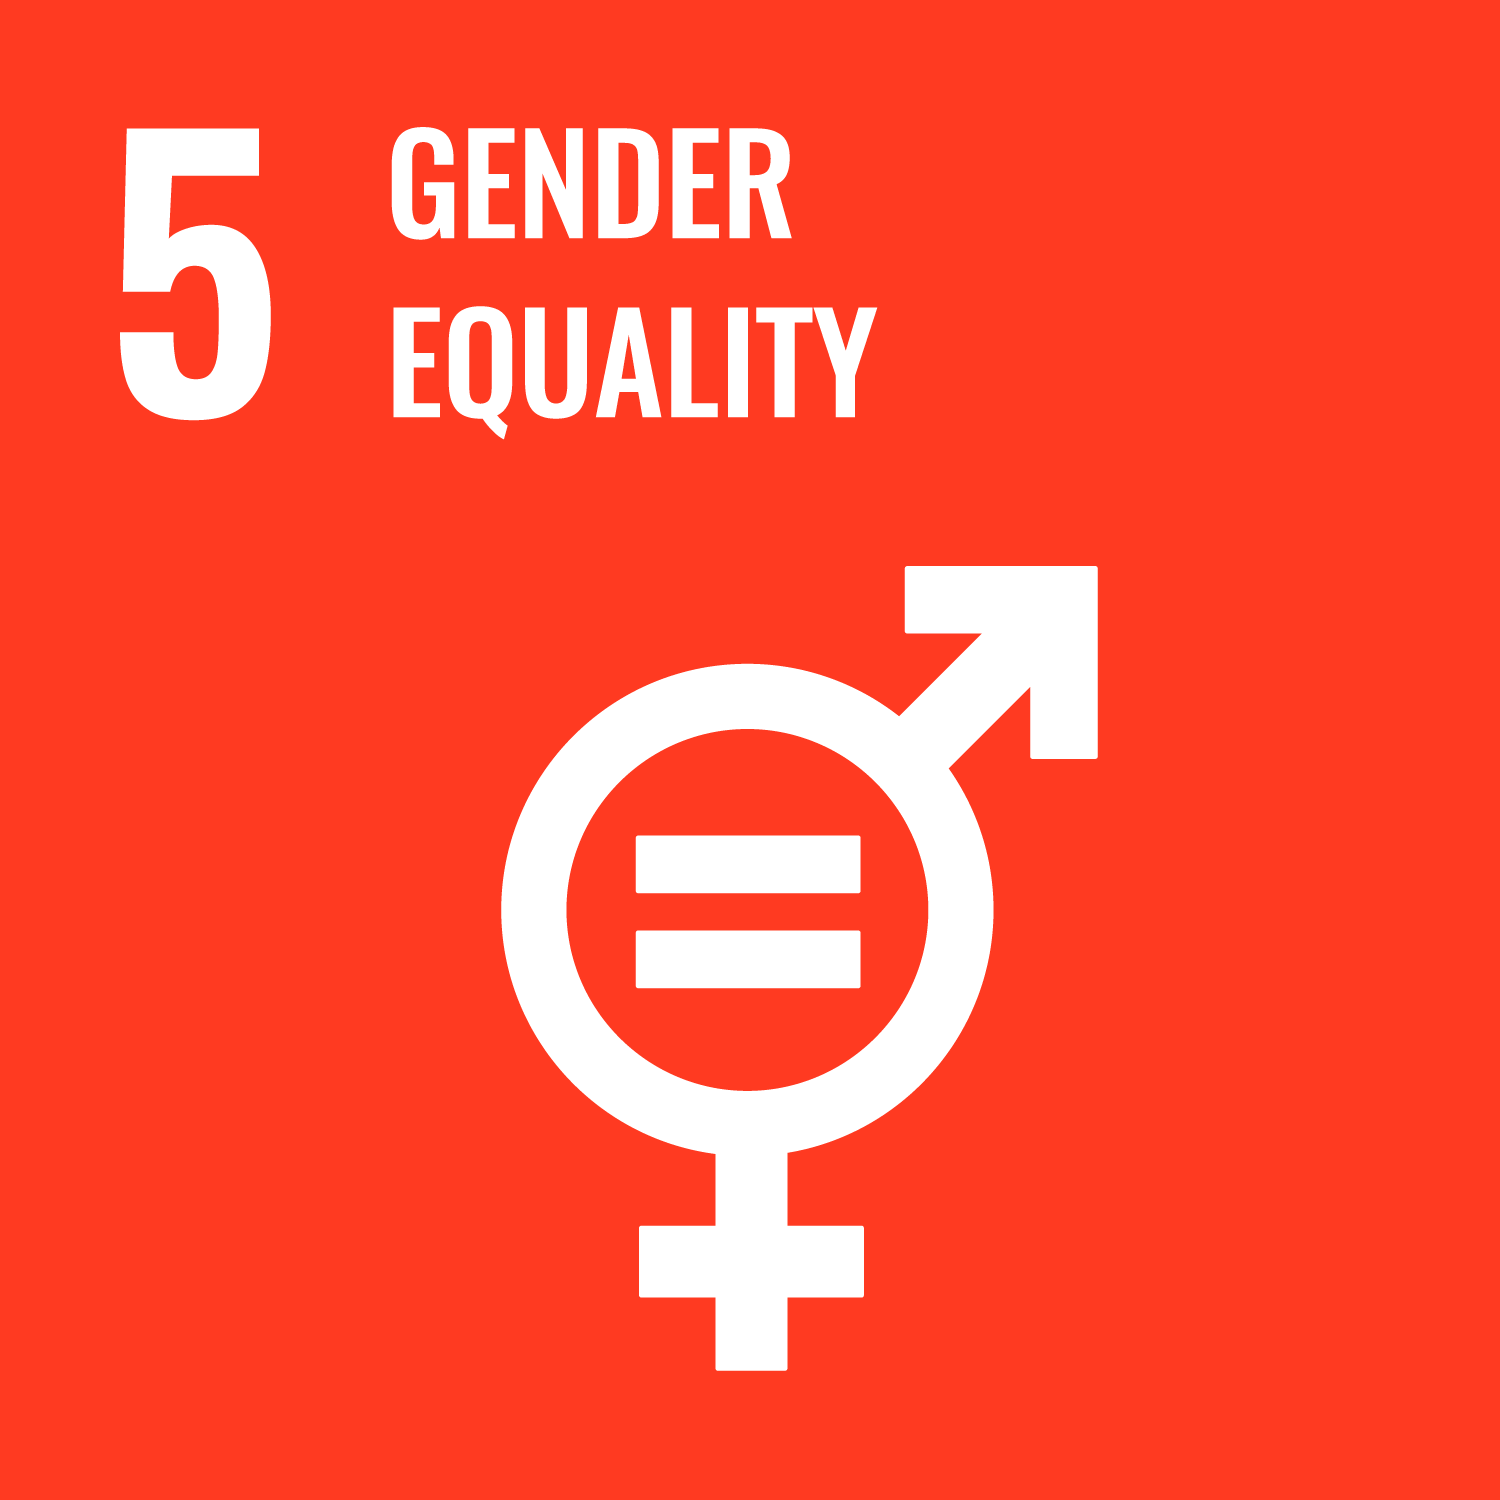 UN SDG 5 - Gender Equality